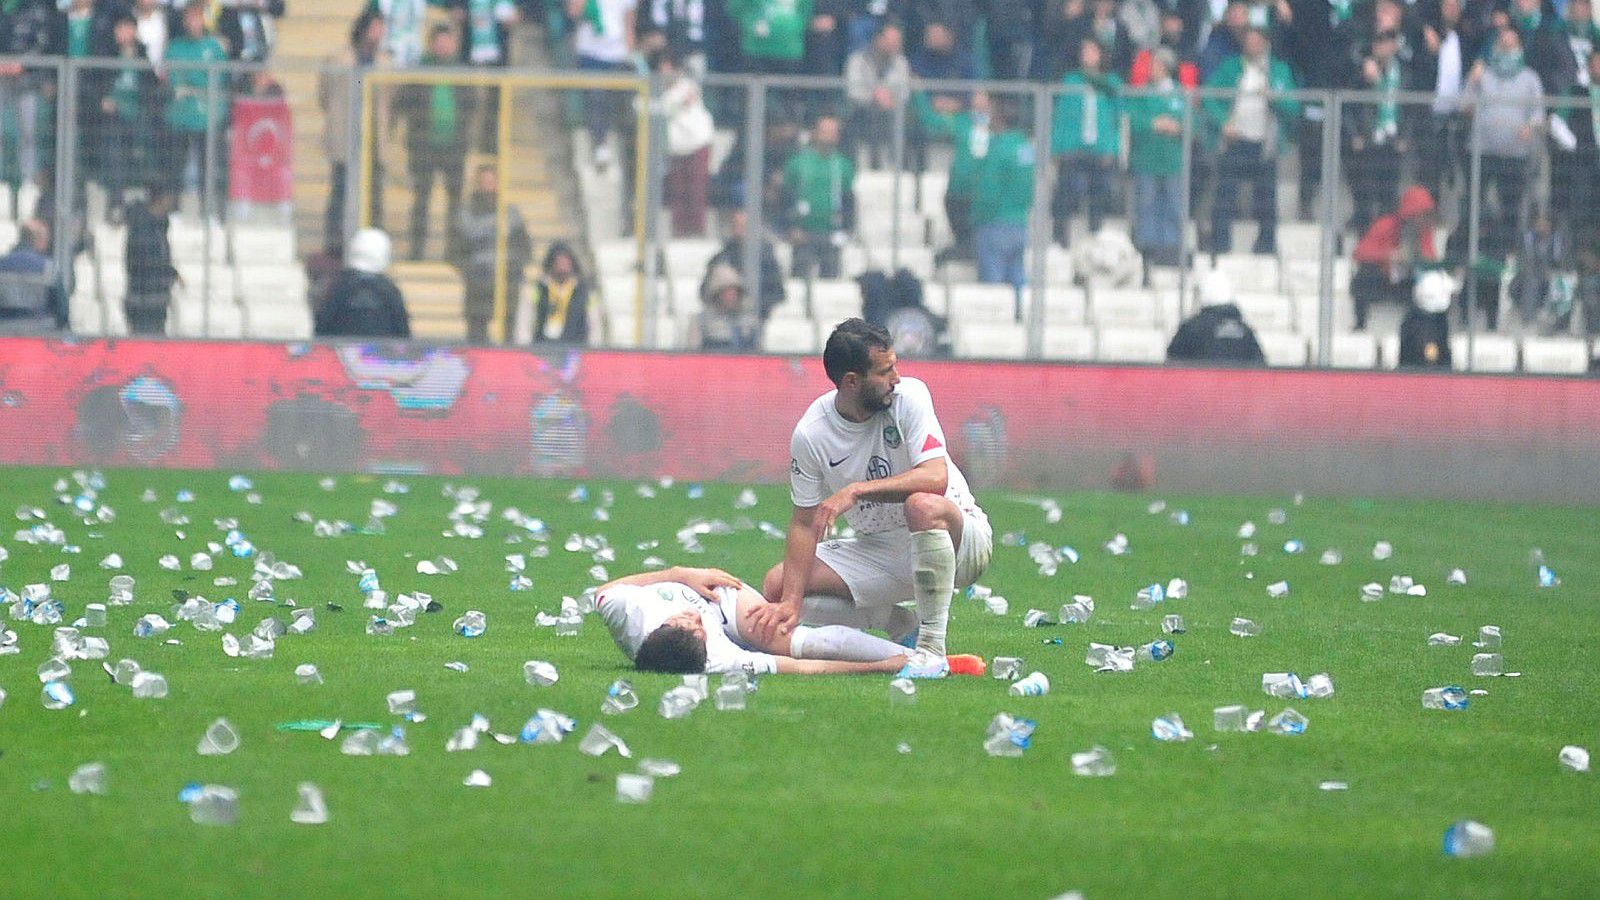 Műanyag poharak hevernek a pályán a játékosok körül... (Fotó: Twitter/Fotomac)